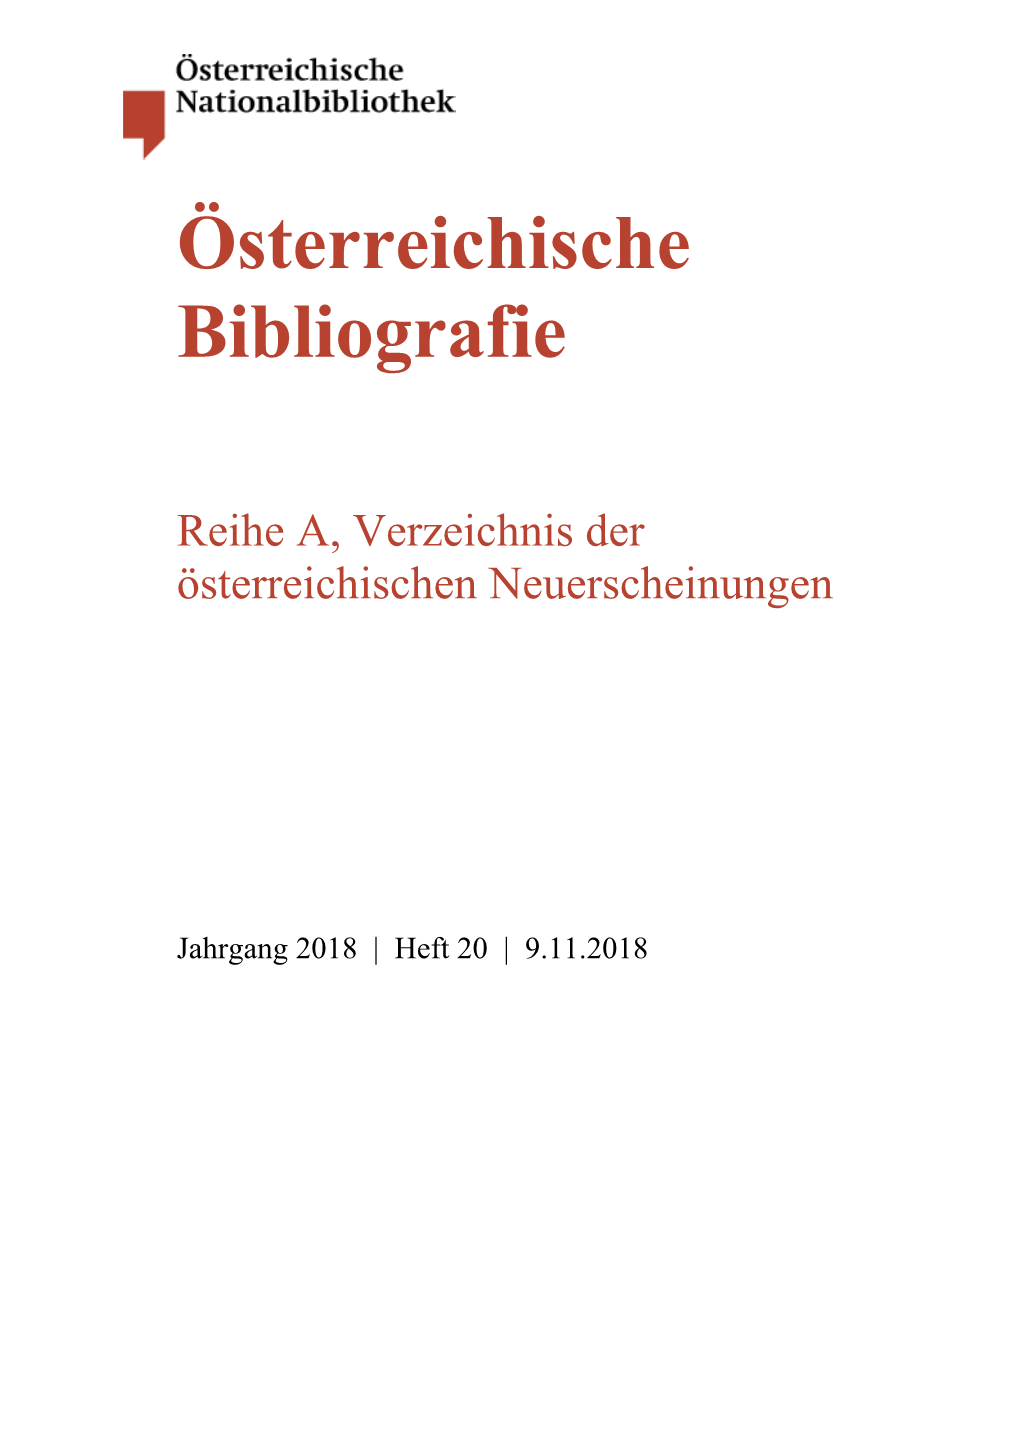 Österreichiche Bibliografie